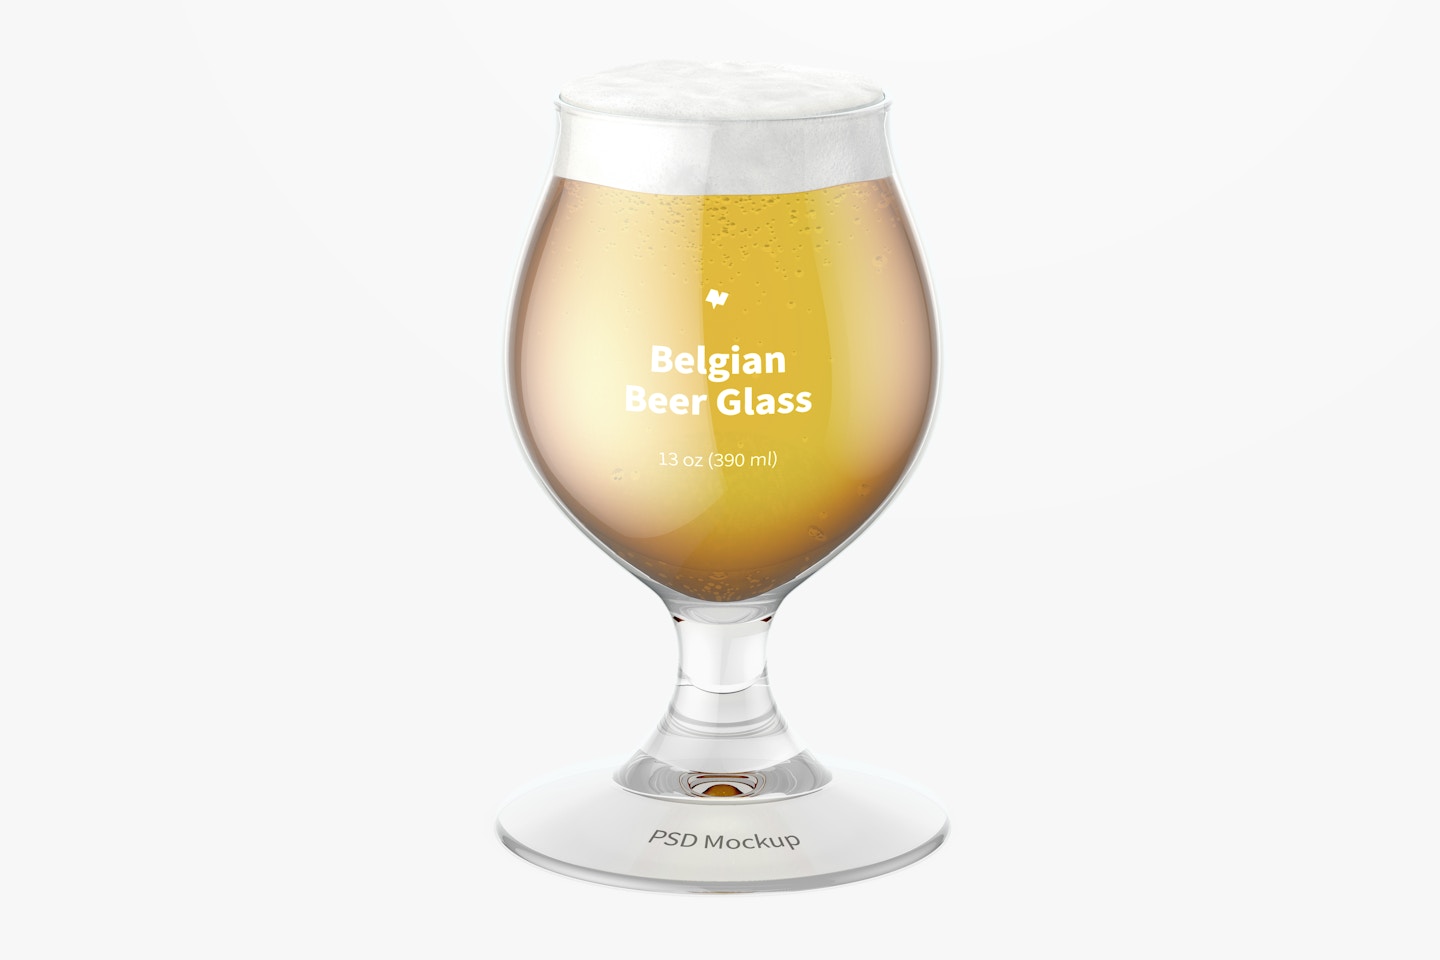 13 oz Belgian Beer Glass Mockup, Front View